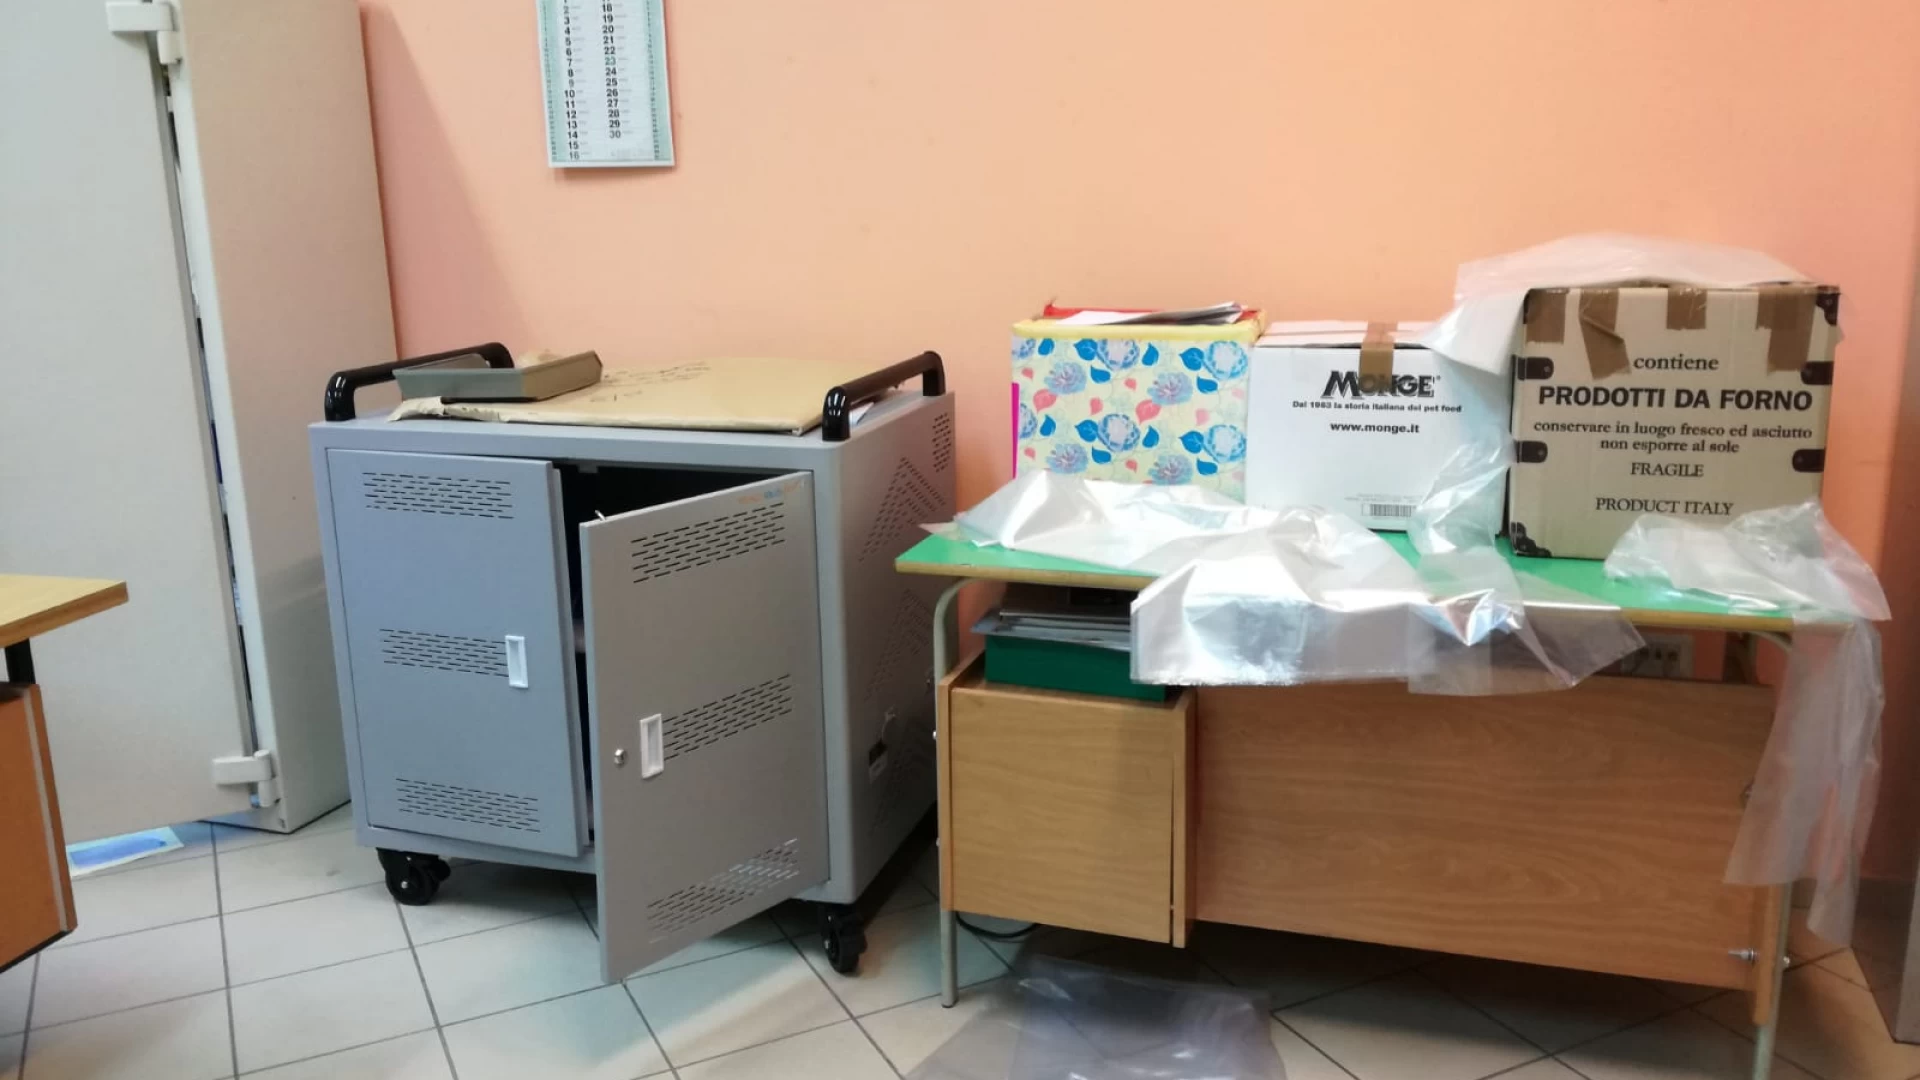 Colli a Volturno: ladri in azione all’interno della scuola. Portati via 19 computer portatili. Indagini in corso dei Carabinieri.